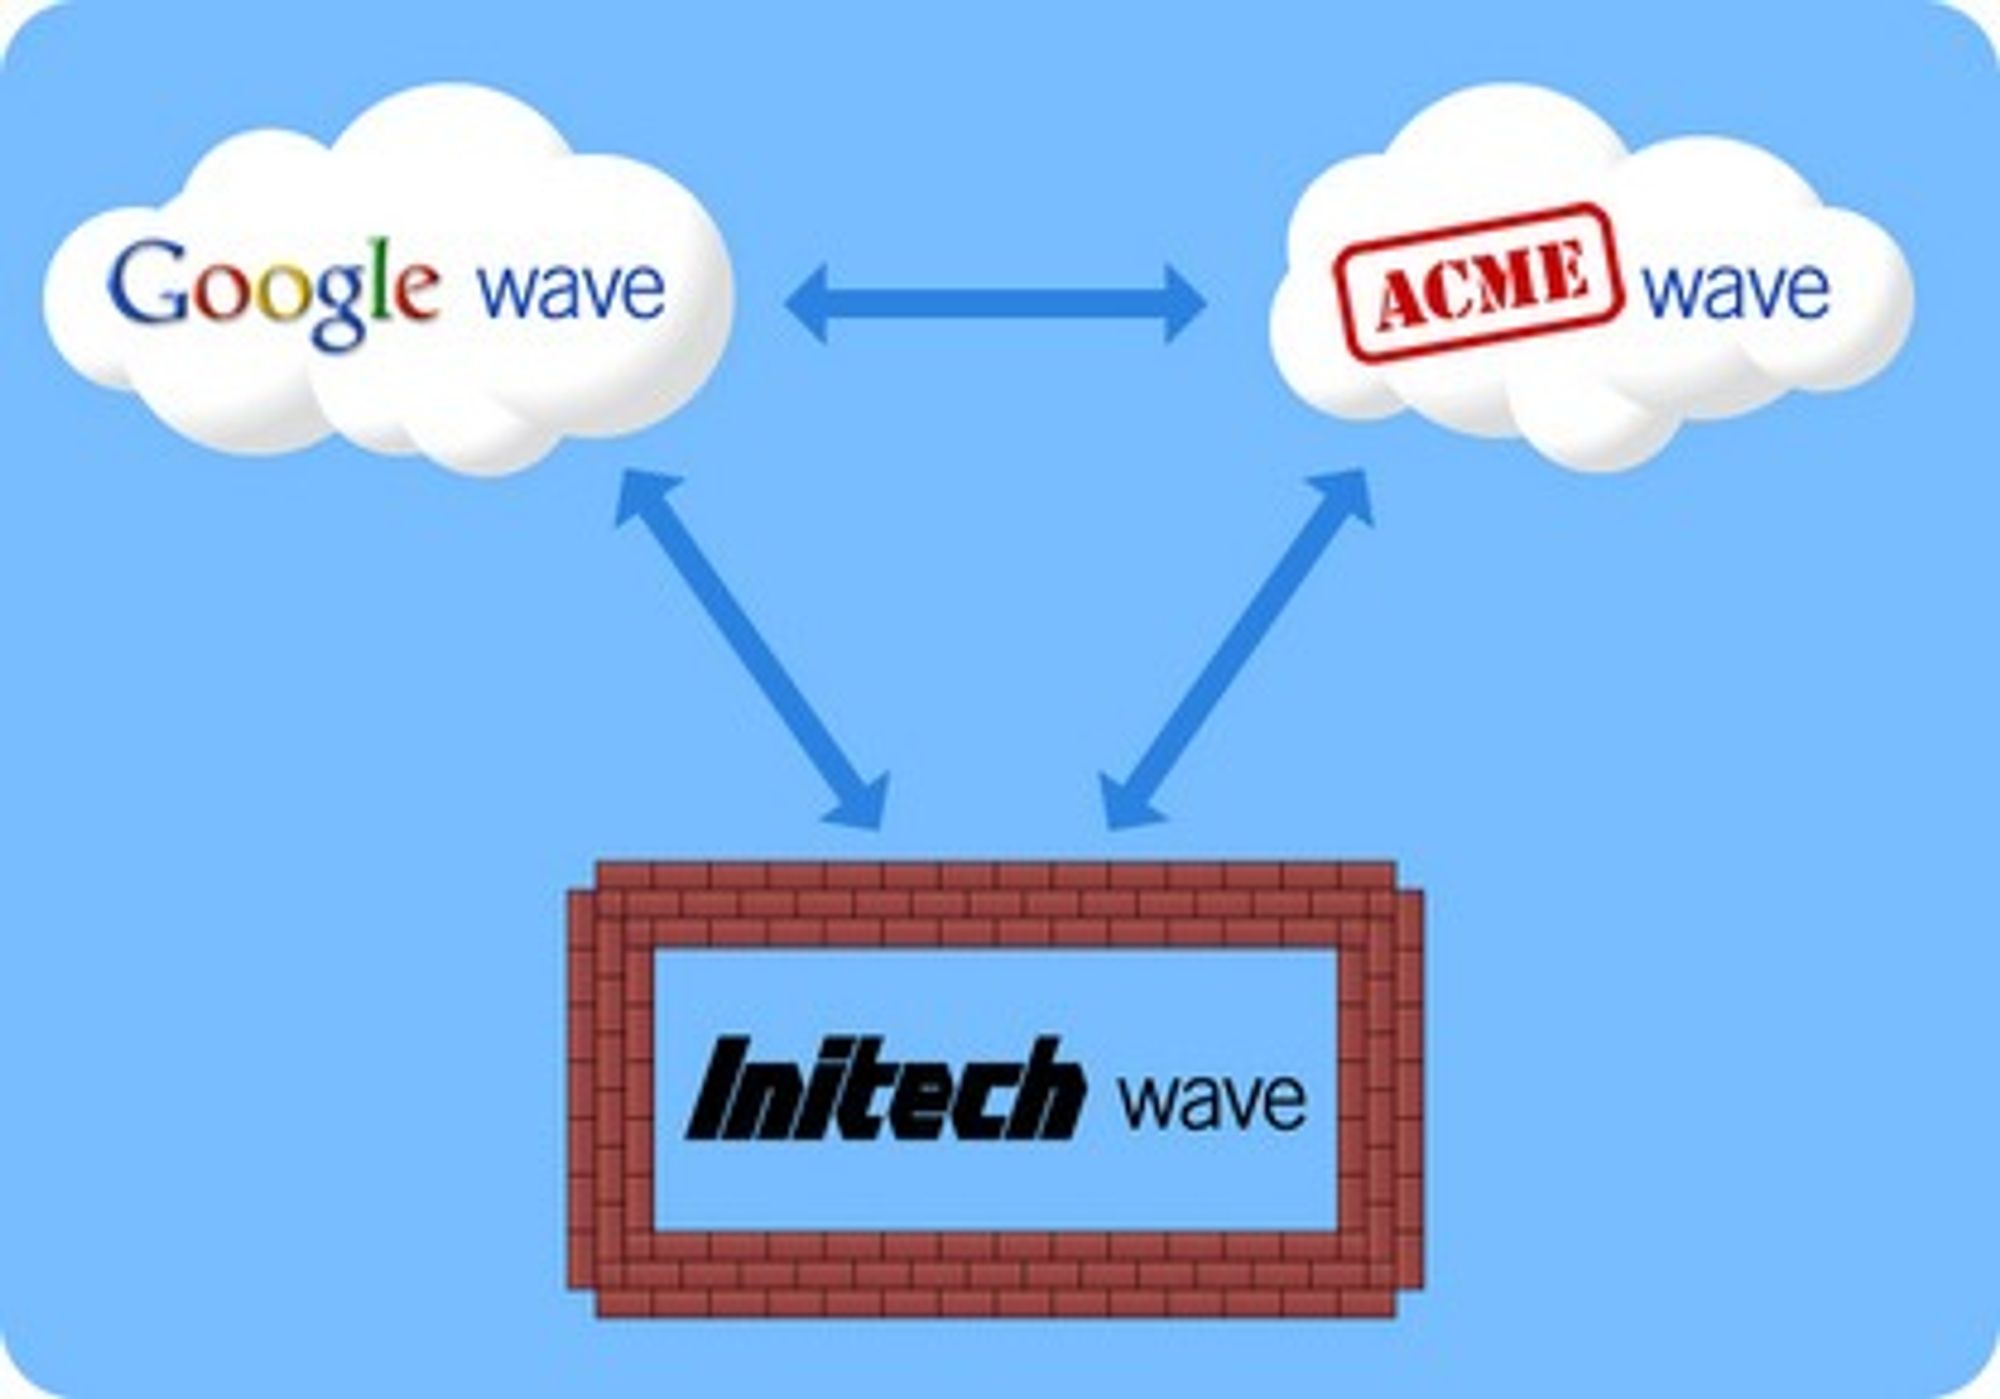 Google Wave skal kunne utveksle bølger med andre bølgetjenester.